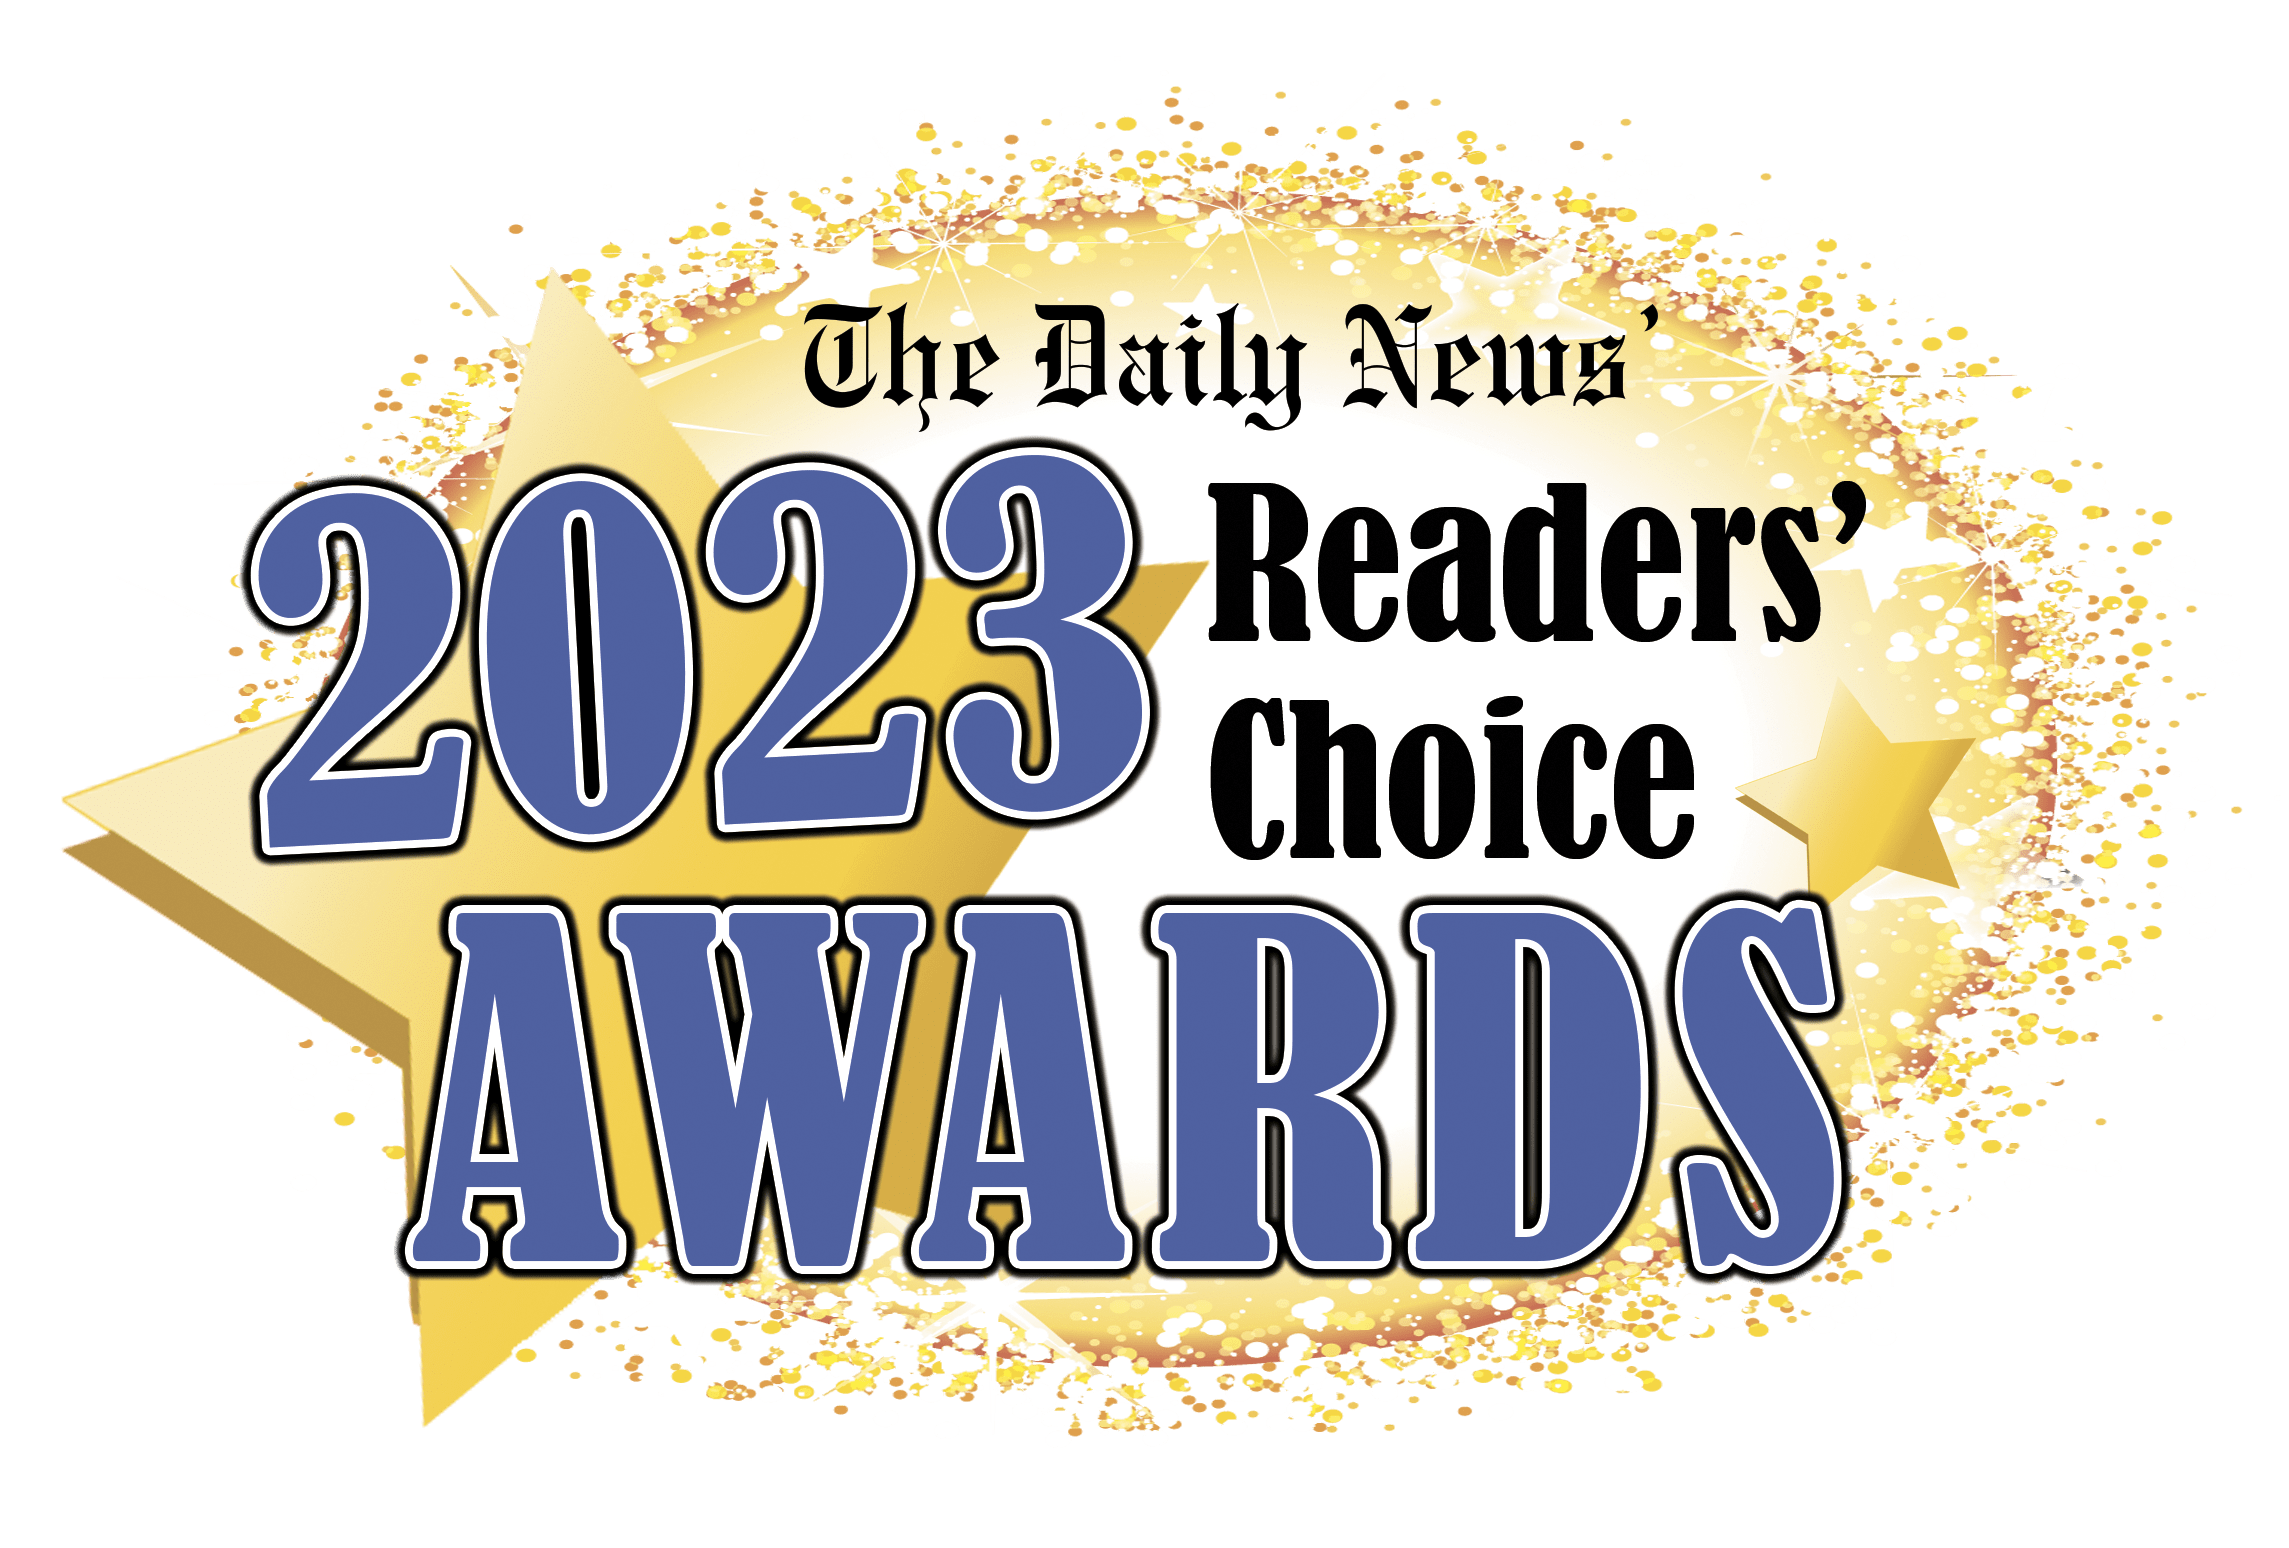 Westfield Topanga - 2023 Daily News Readers' Choice